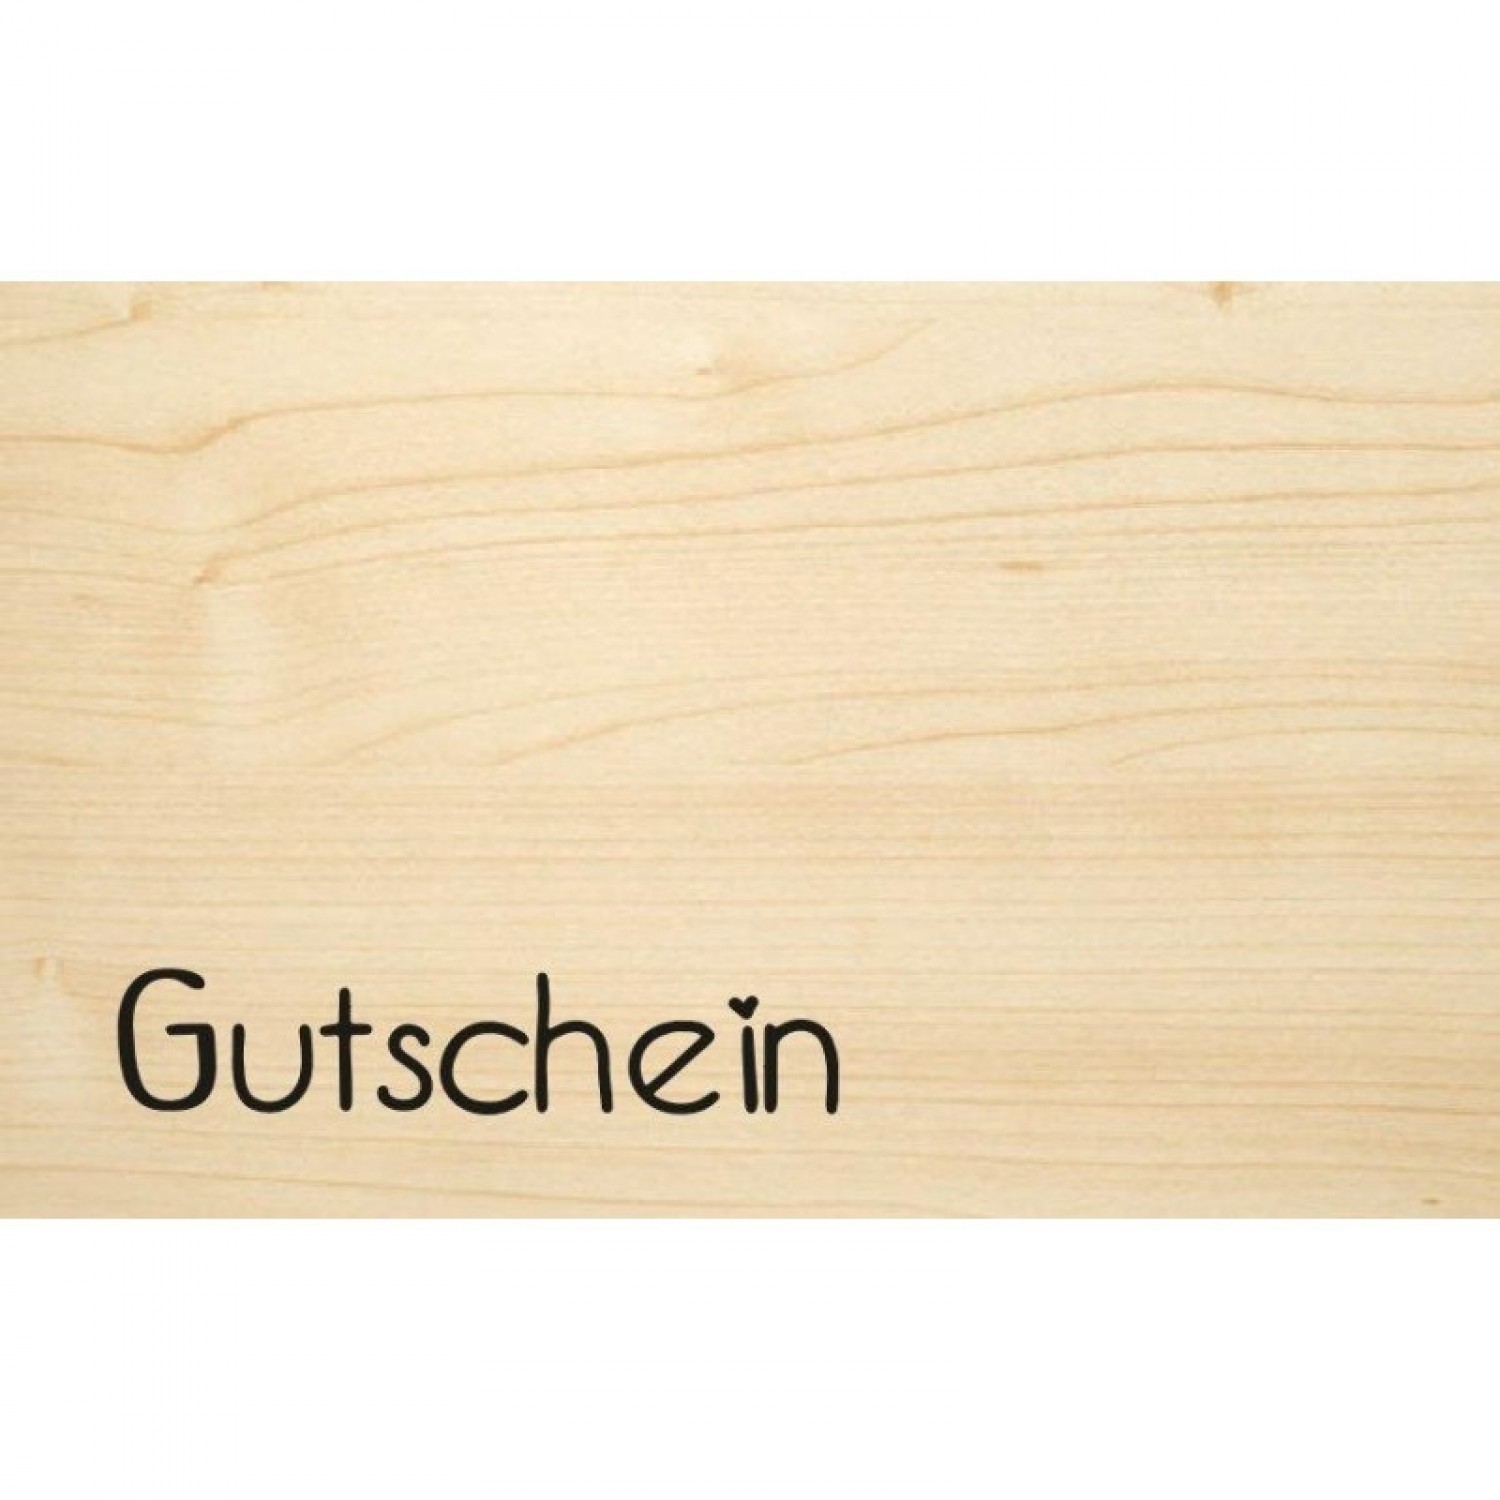 Gutschein – Glückwunschkarte aus Öko Holz | Biodora